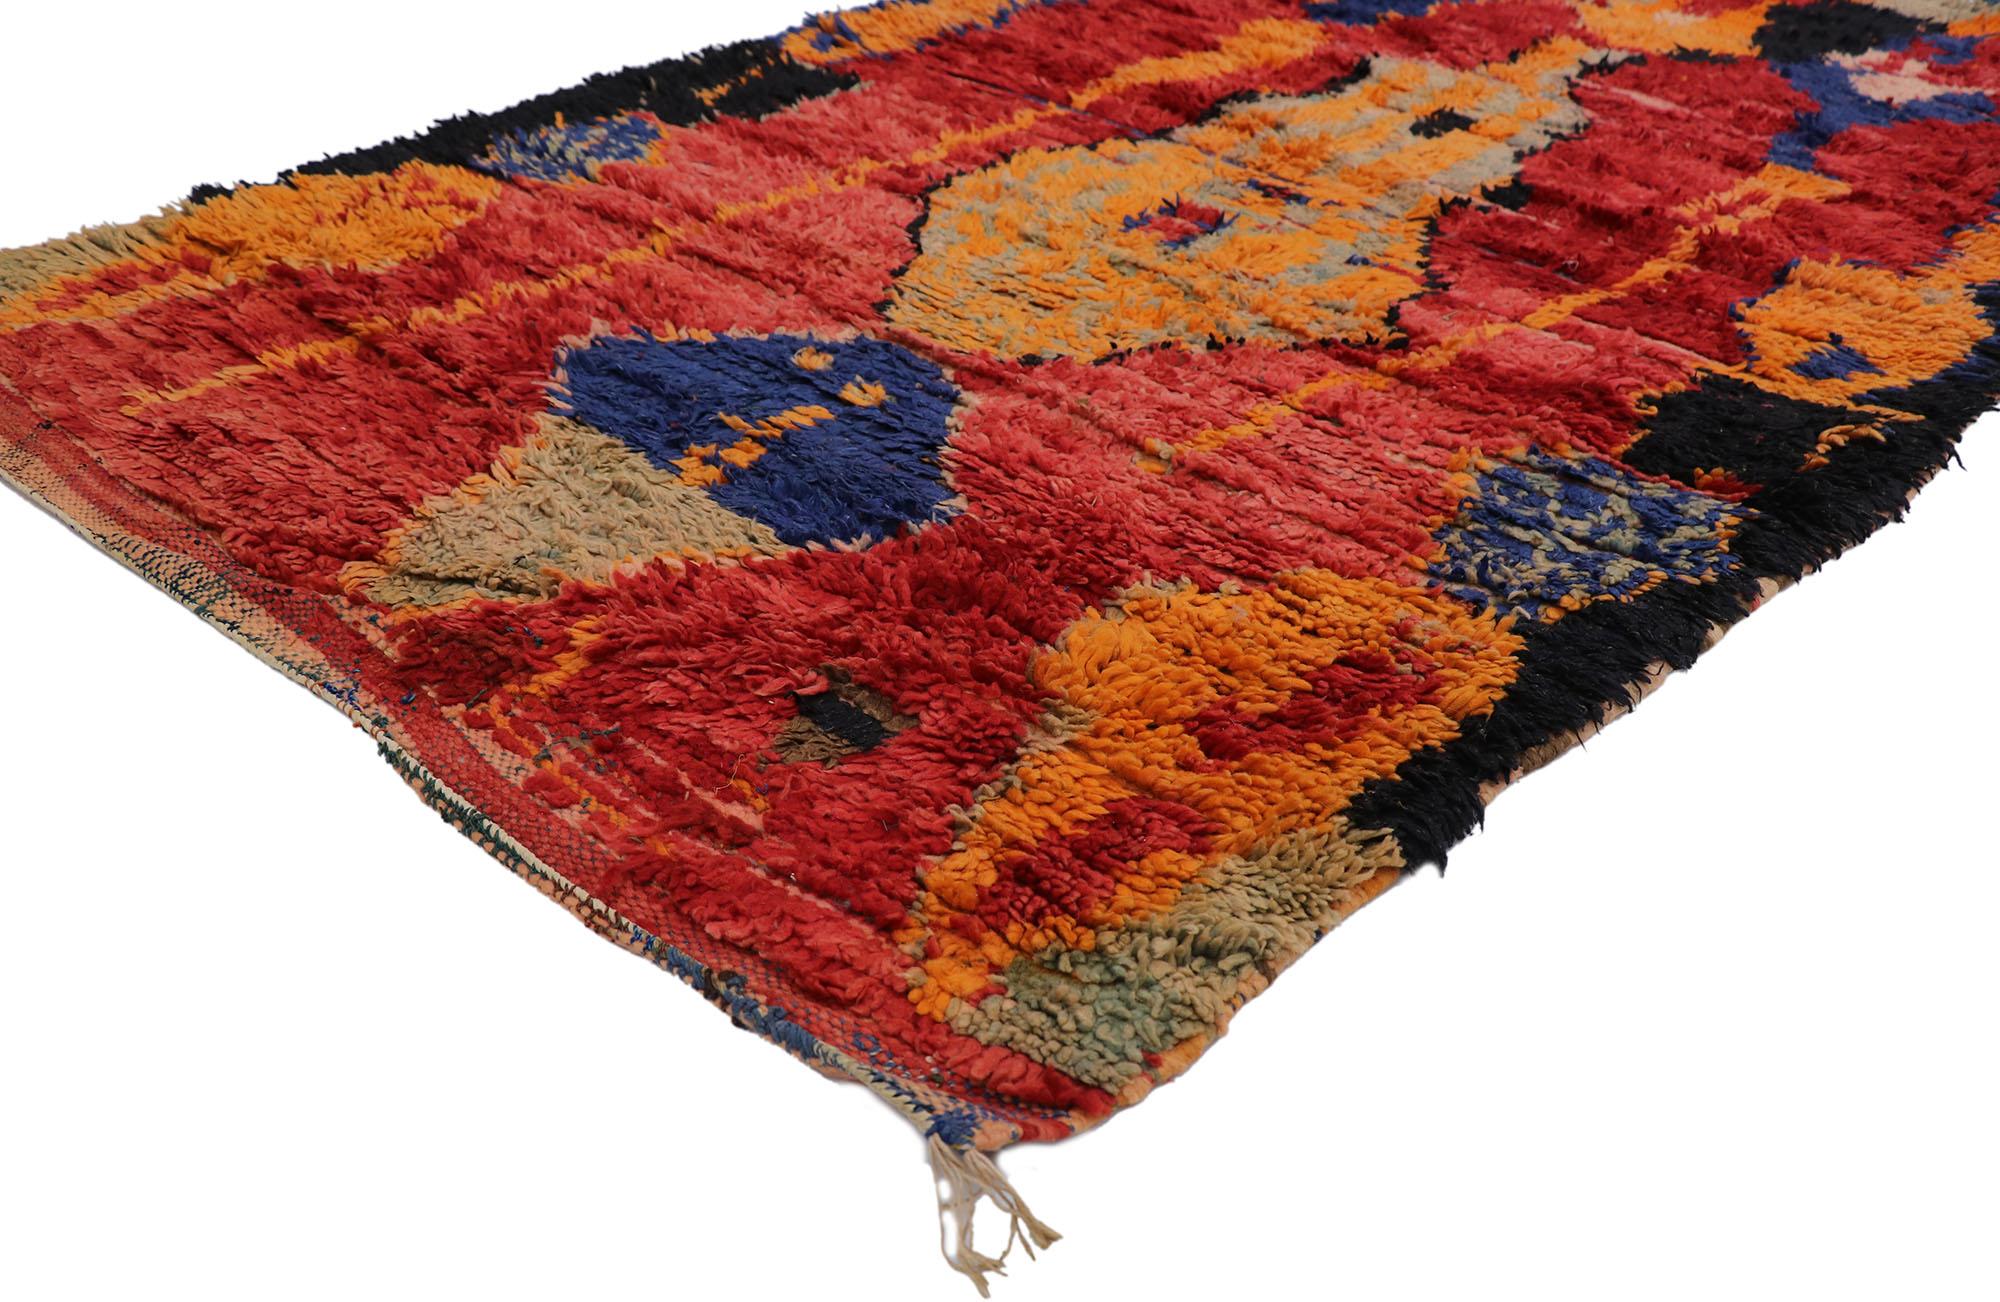 21300 Vintage Berber Ait Bou Ichaouen marokkanischen Teppich mit Tribal Style 04'04 x 07'07. Dieser marokkanische Berberteppich Ait Bou Ichaouen aus handgeknüpfter Wolle mit seinem kühnen, ausdrucksstarken Design, seinen unglaublichen Details und